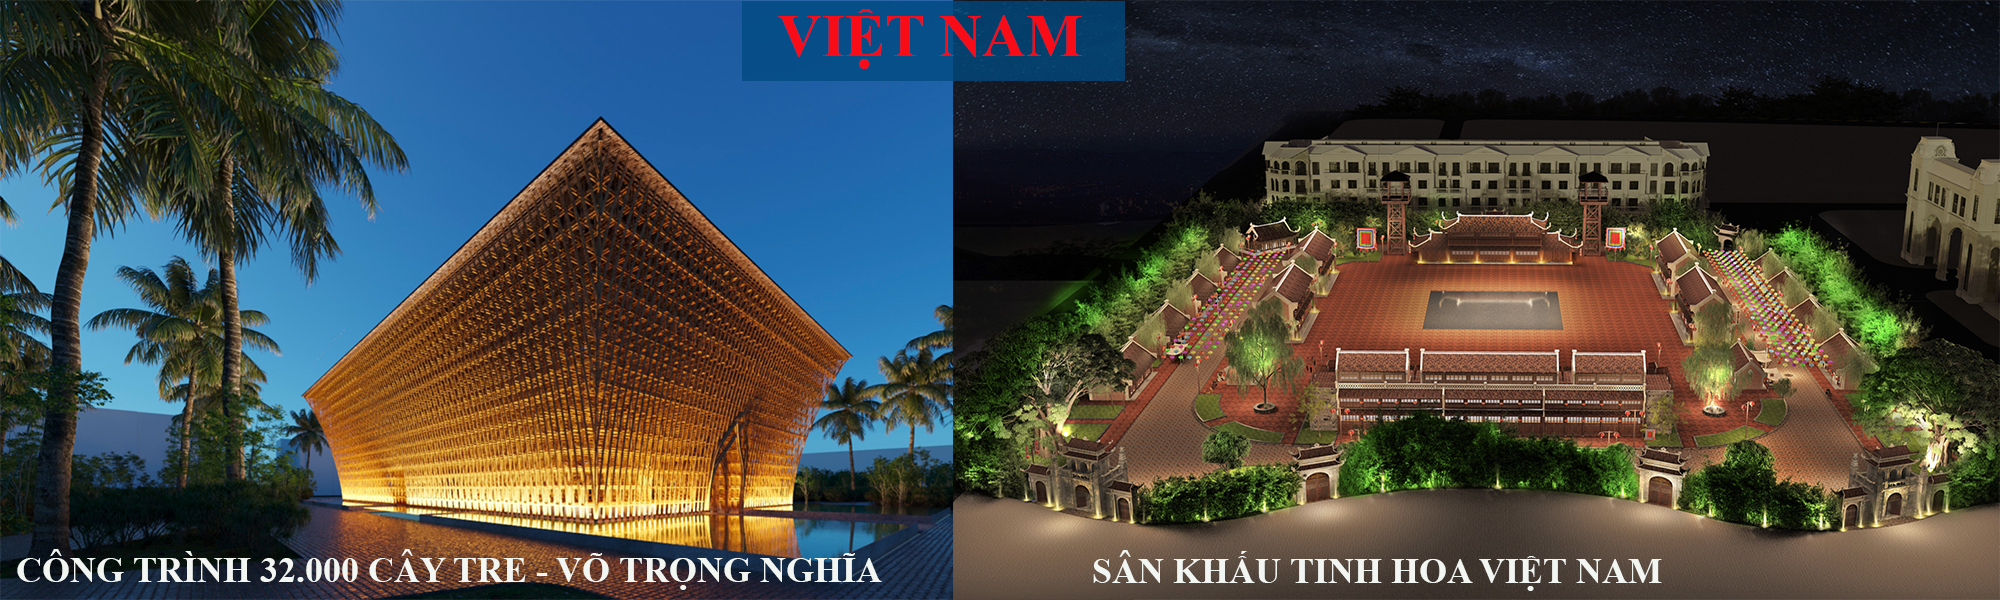 Biểu tượng Việt Nam tại GrandWorld